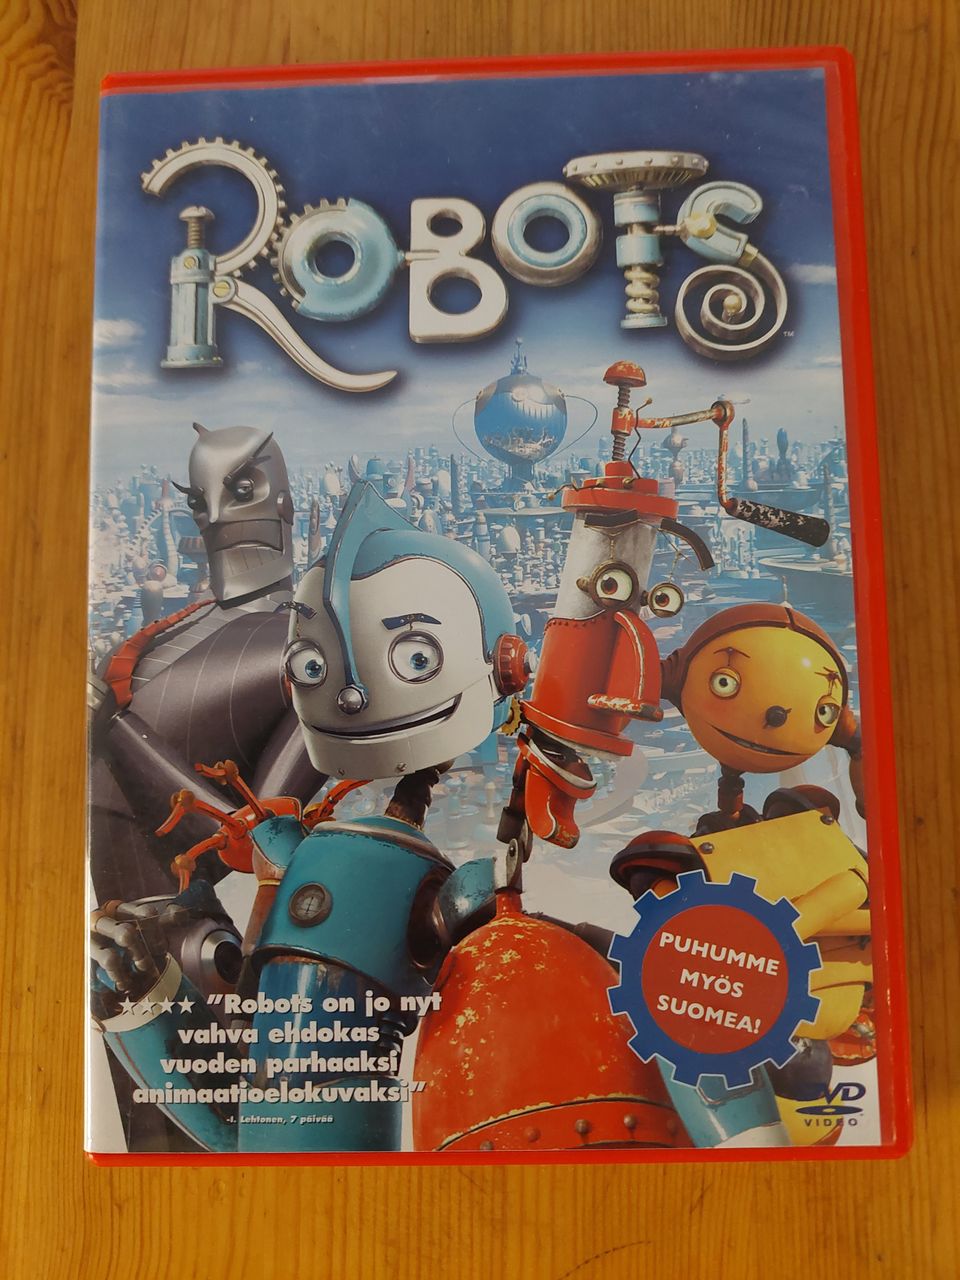 Robots dvd